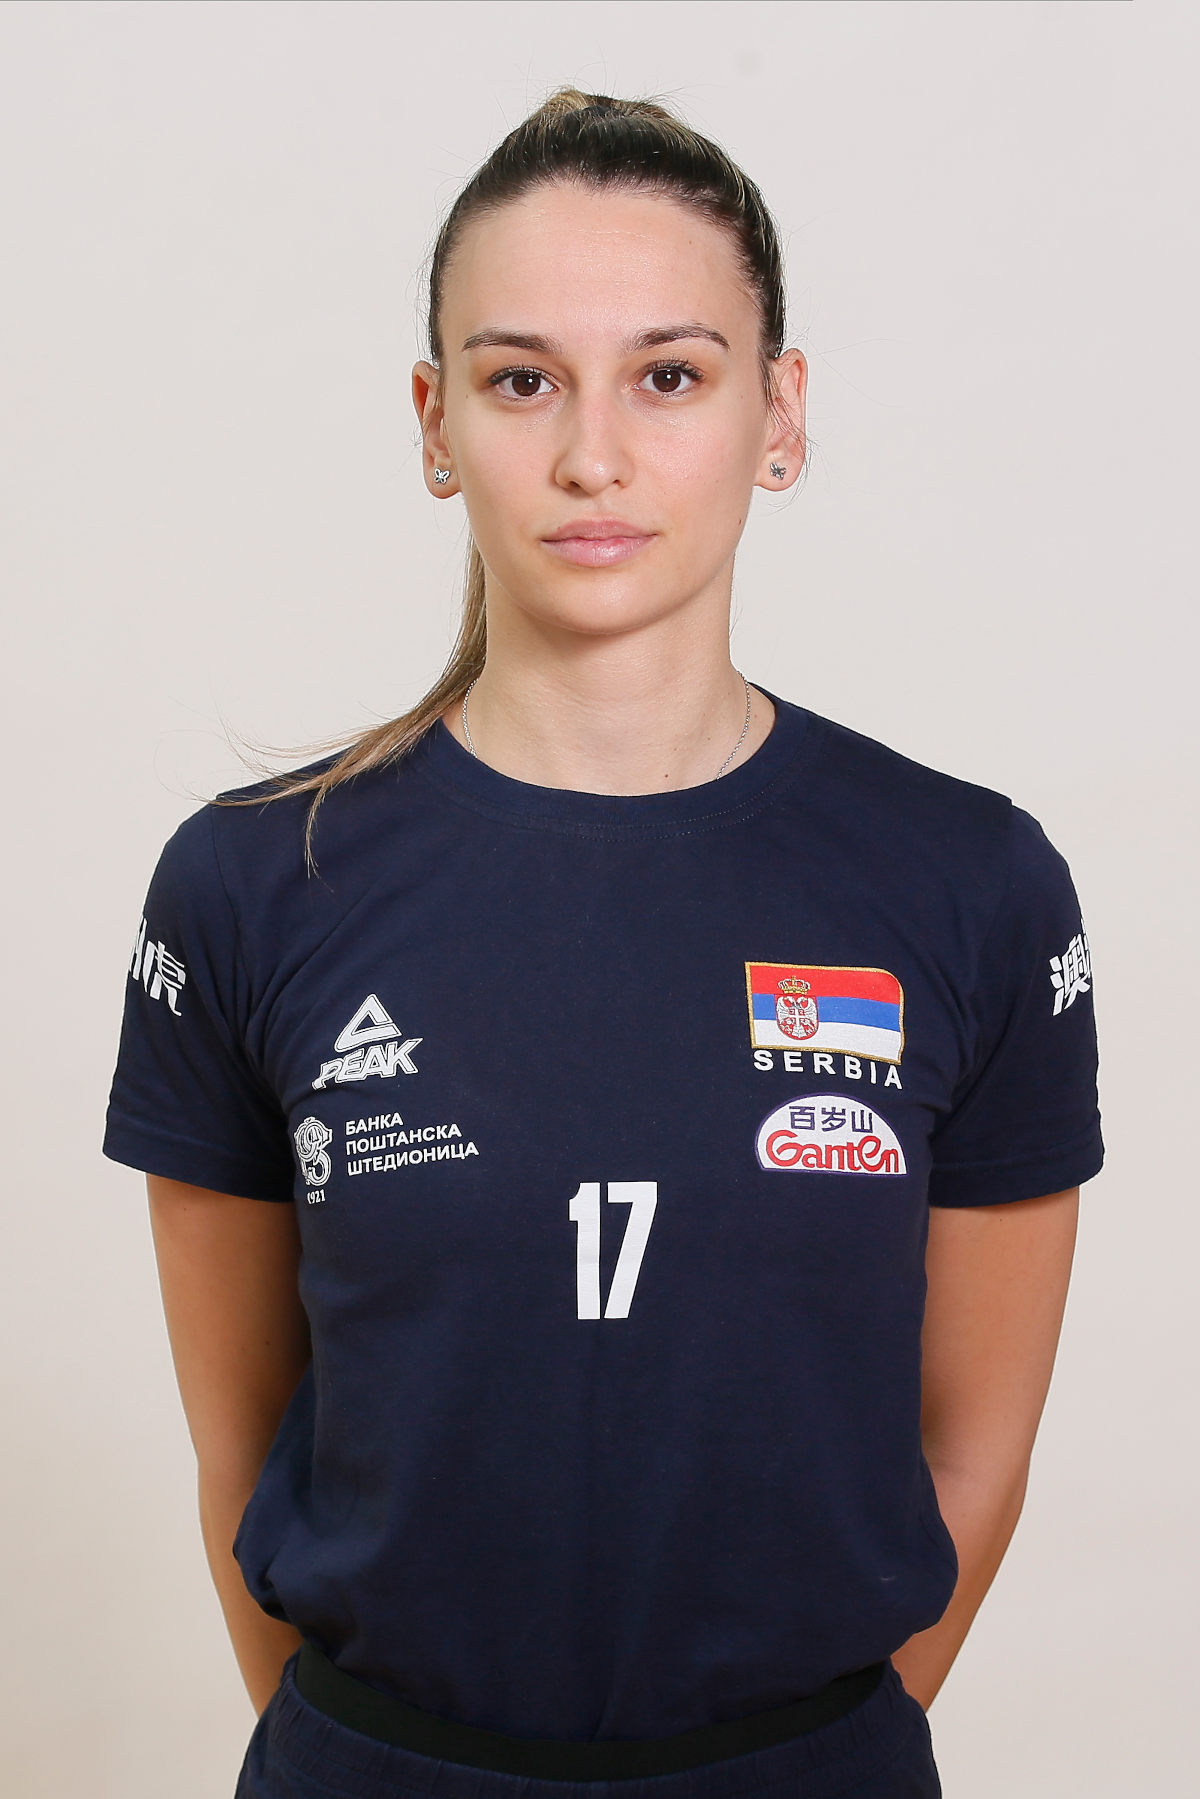 Tijana Milojević